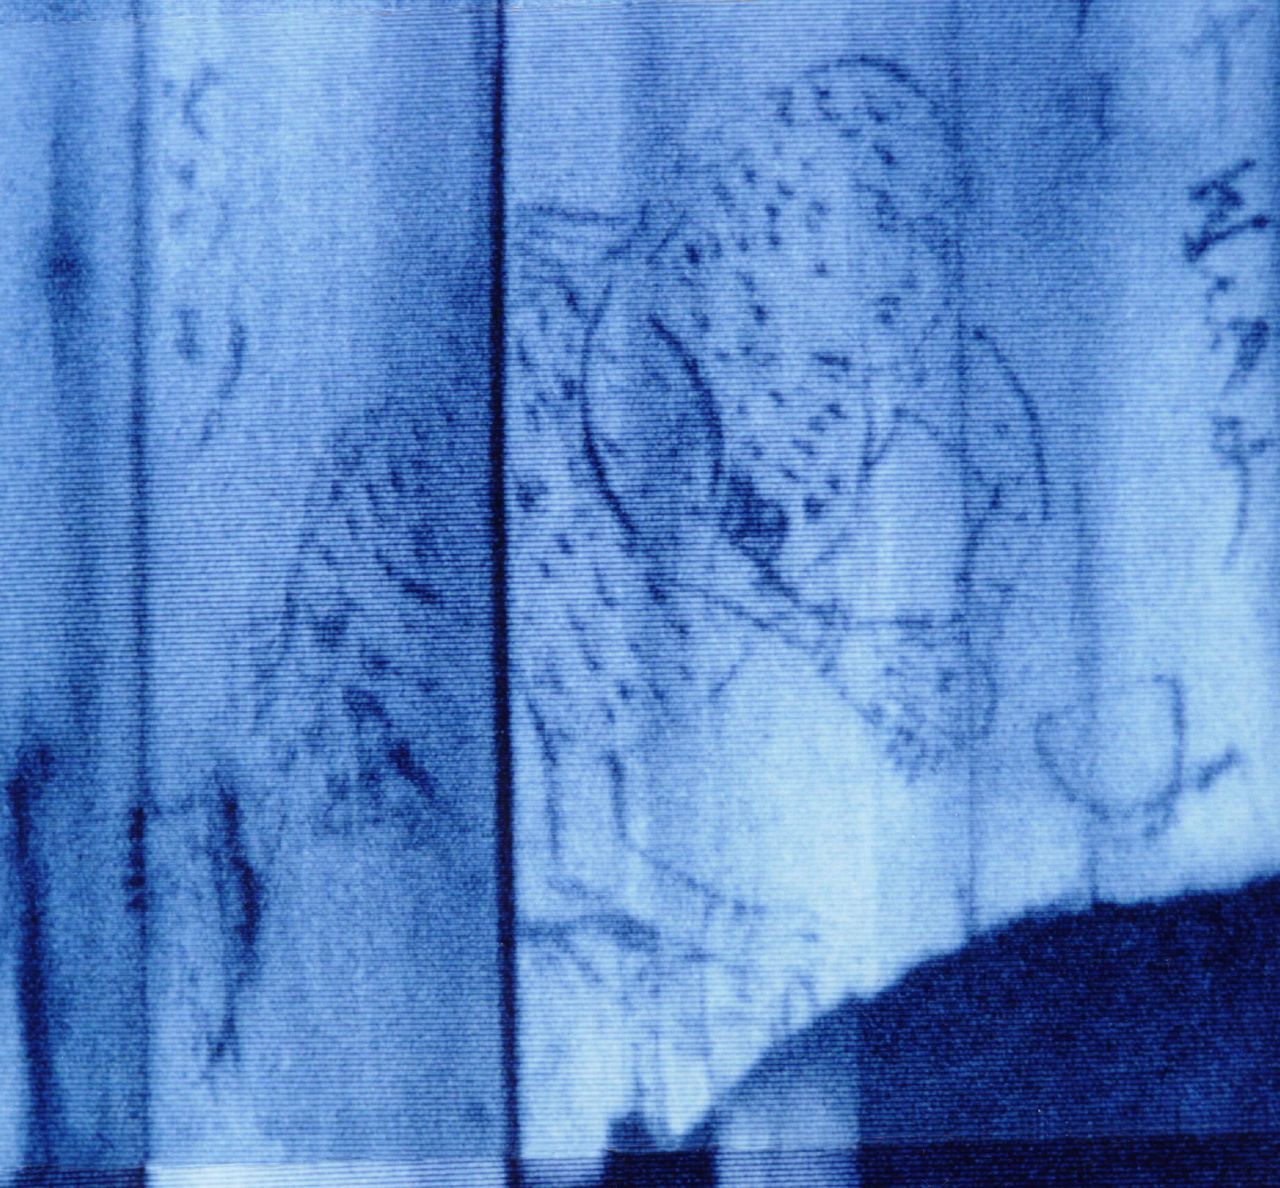 Деталь изображения нингё, предлагающего талисман, обнаруженного на археологических раскопках Судзаки в префектуре Акита (предоставлено Советом по образованию префектуры Акита; © Jiji)